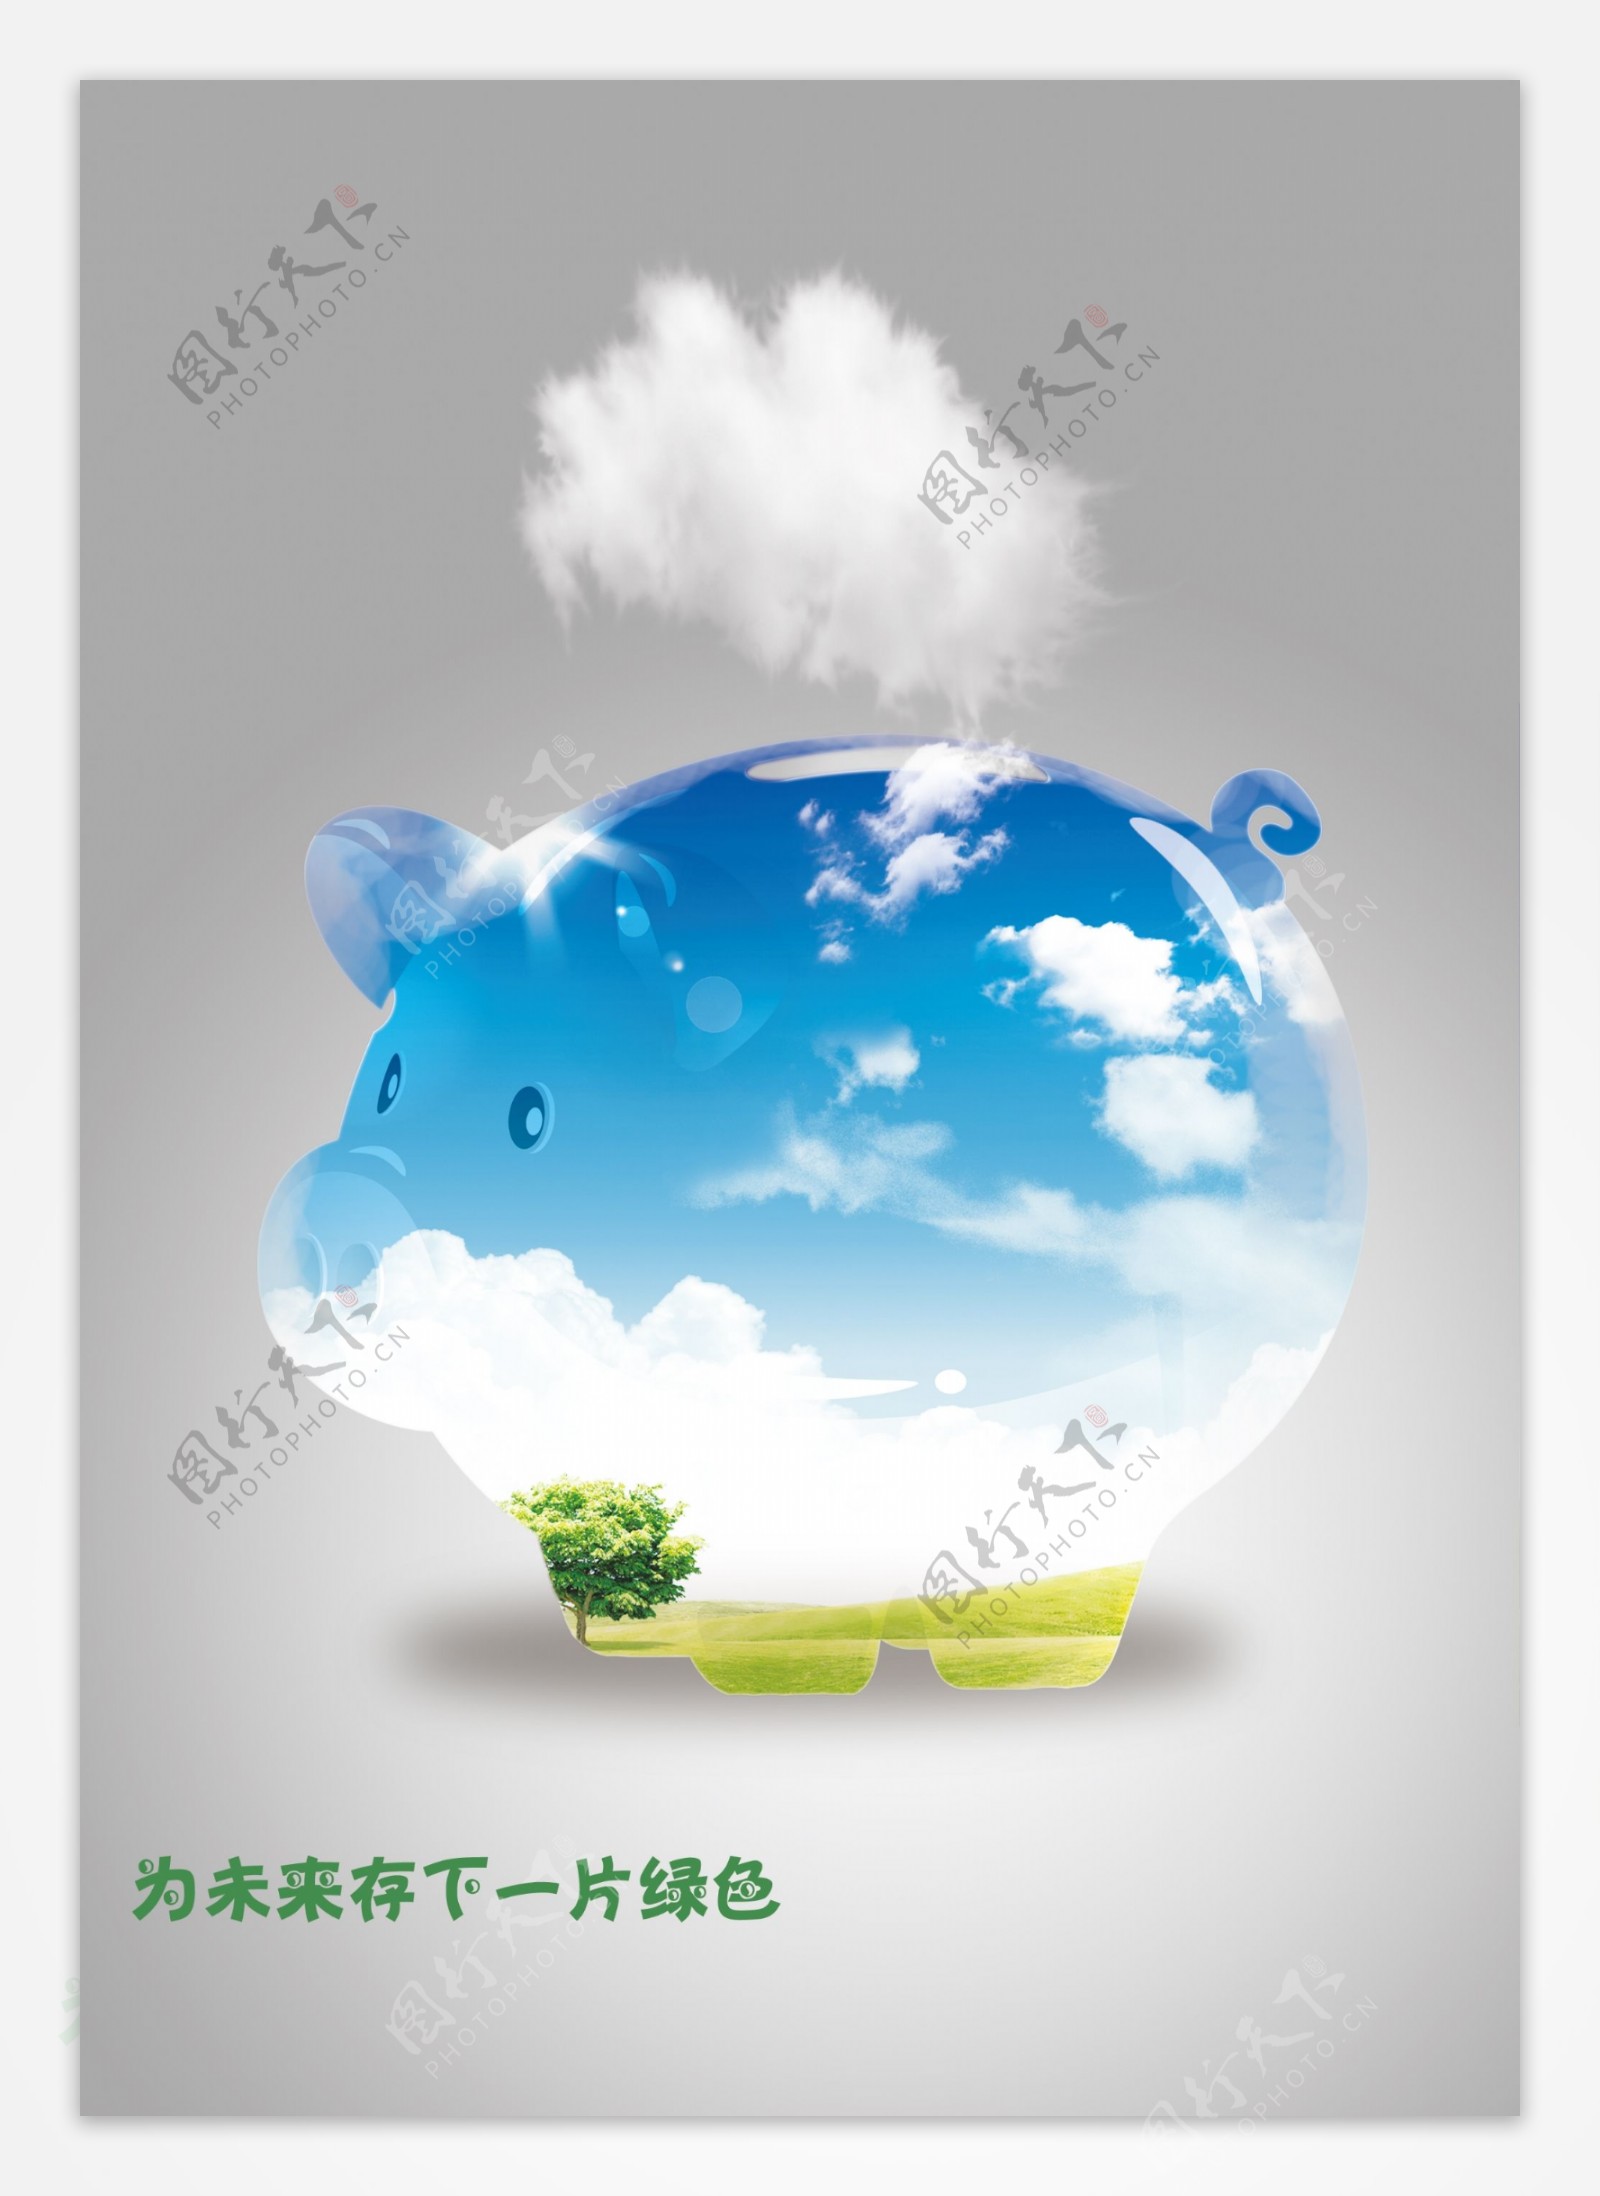 环保公益广告图片